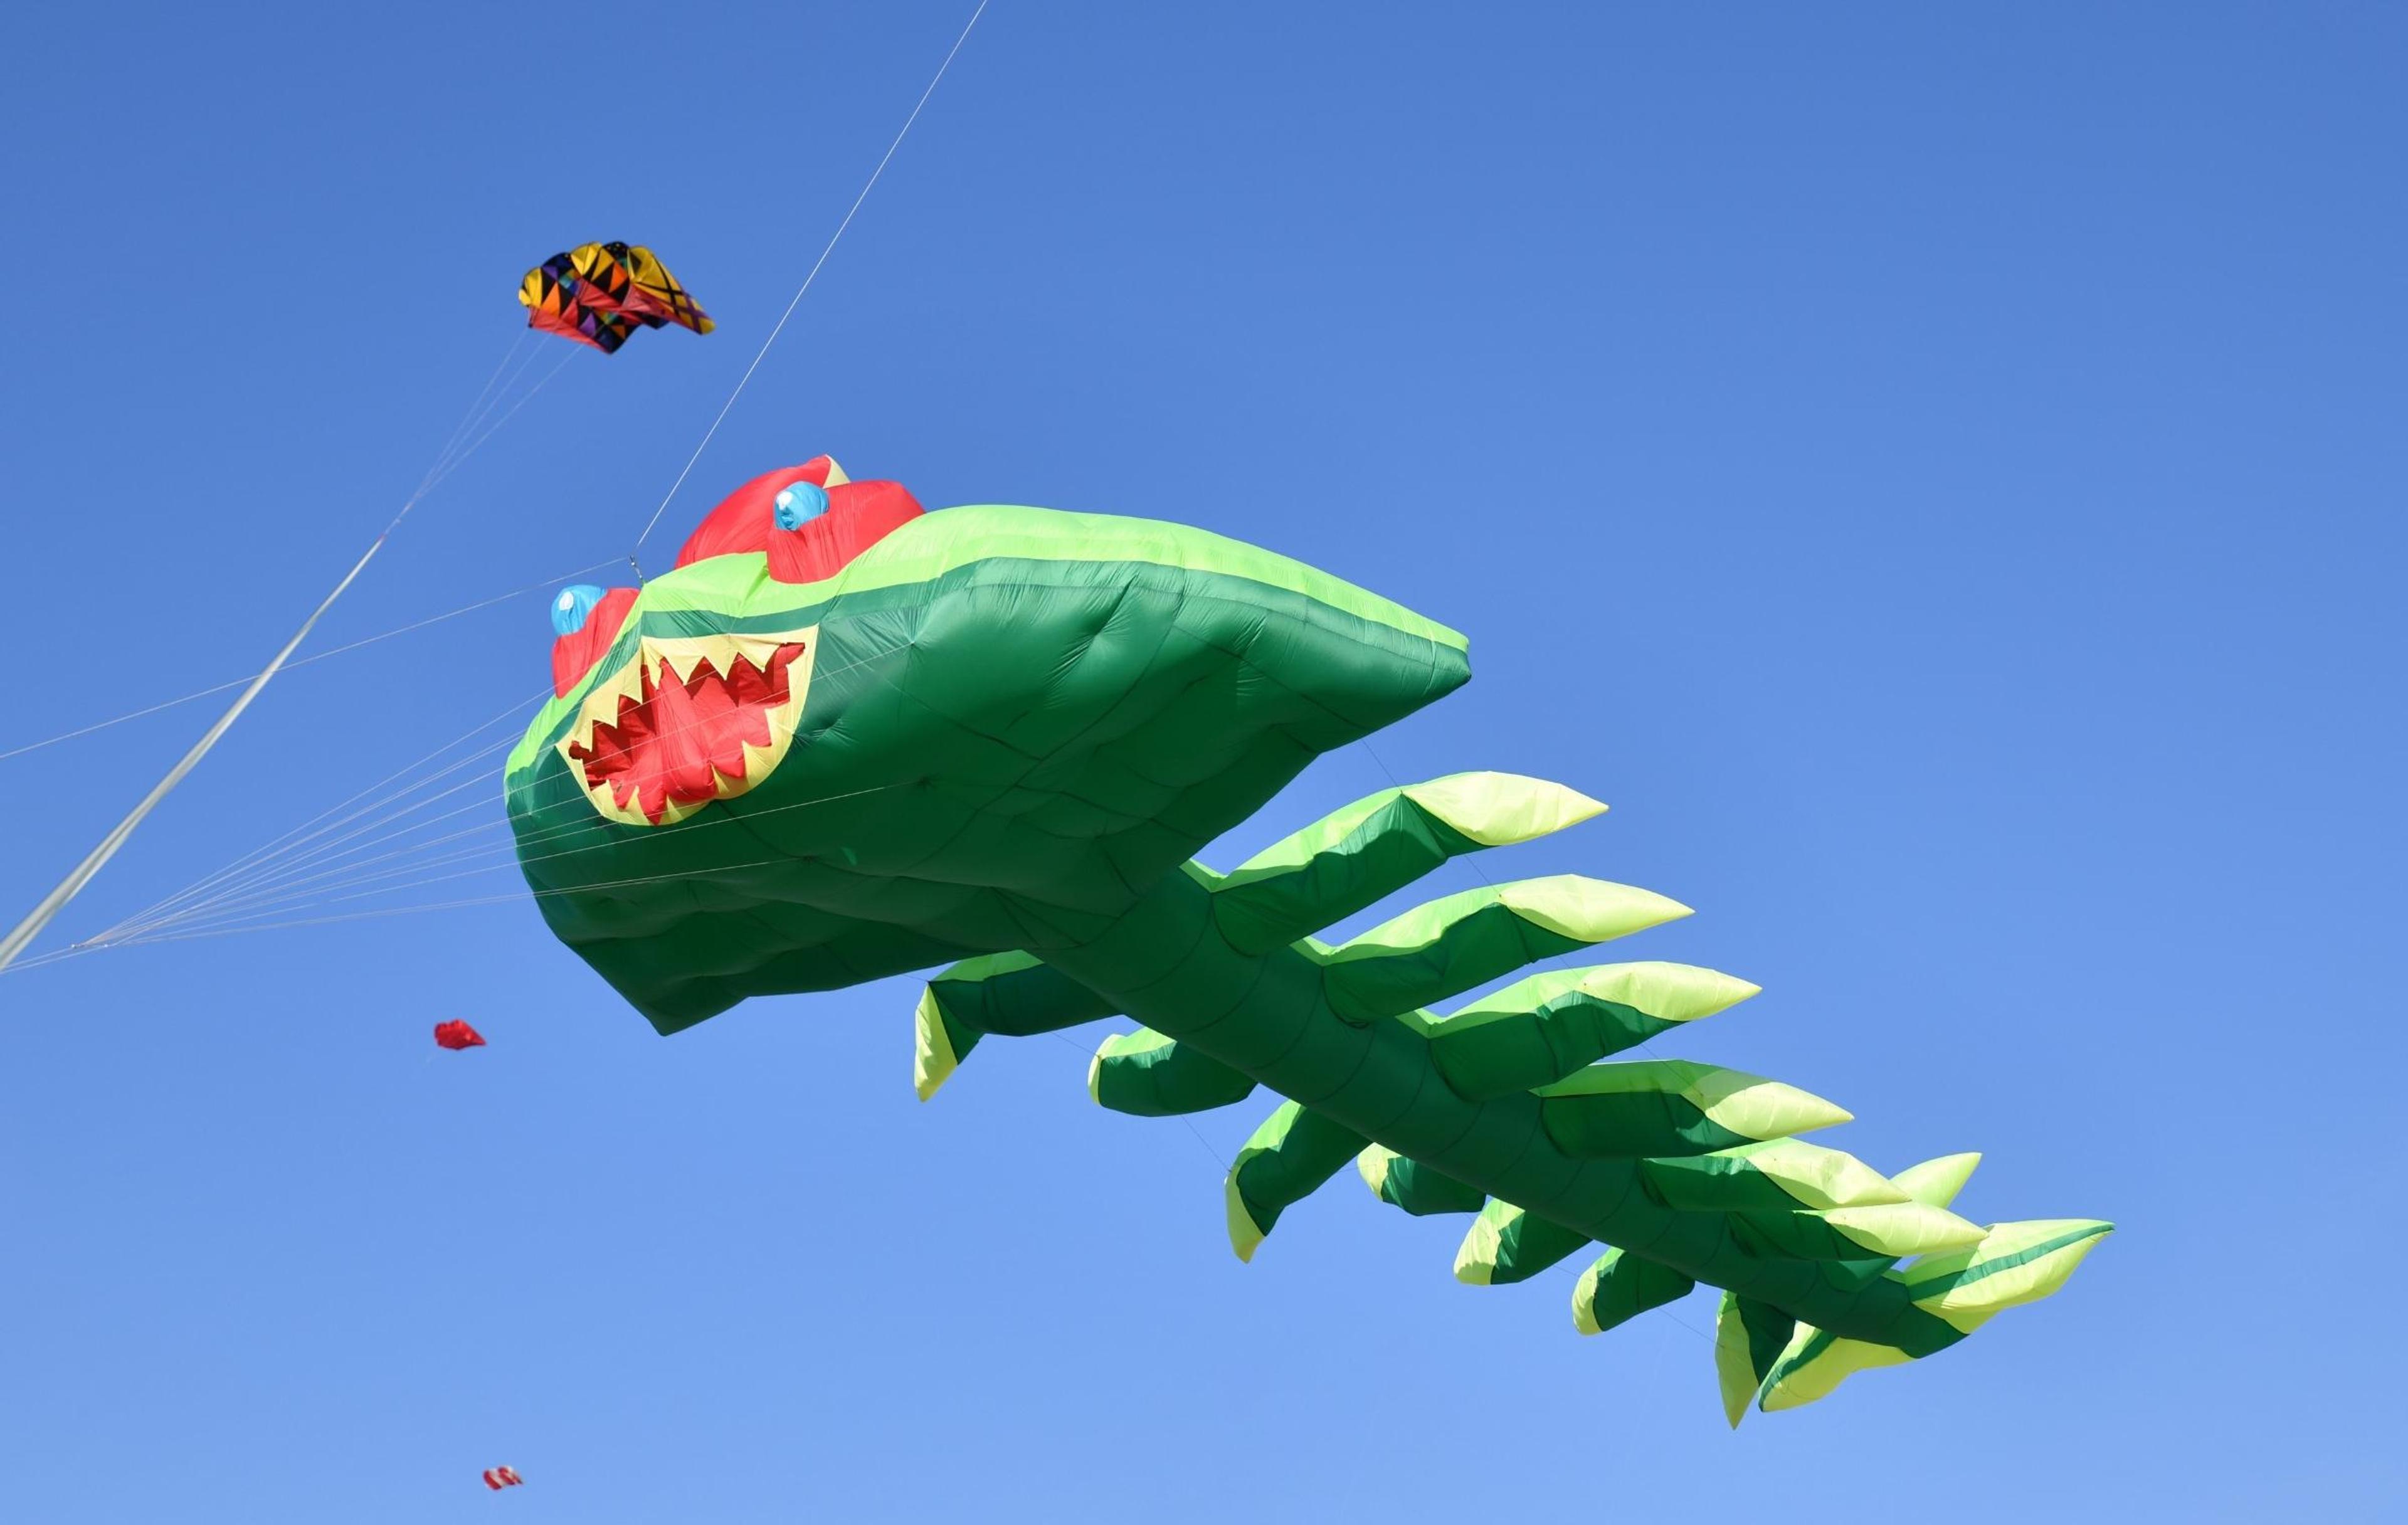 Creative kite flying over Atlantic during the Dieppe Kite Festival